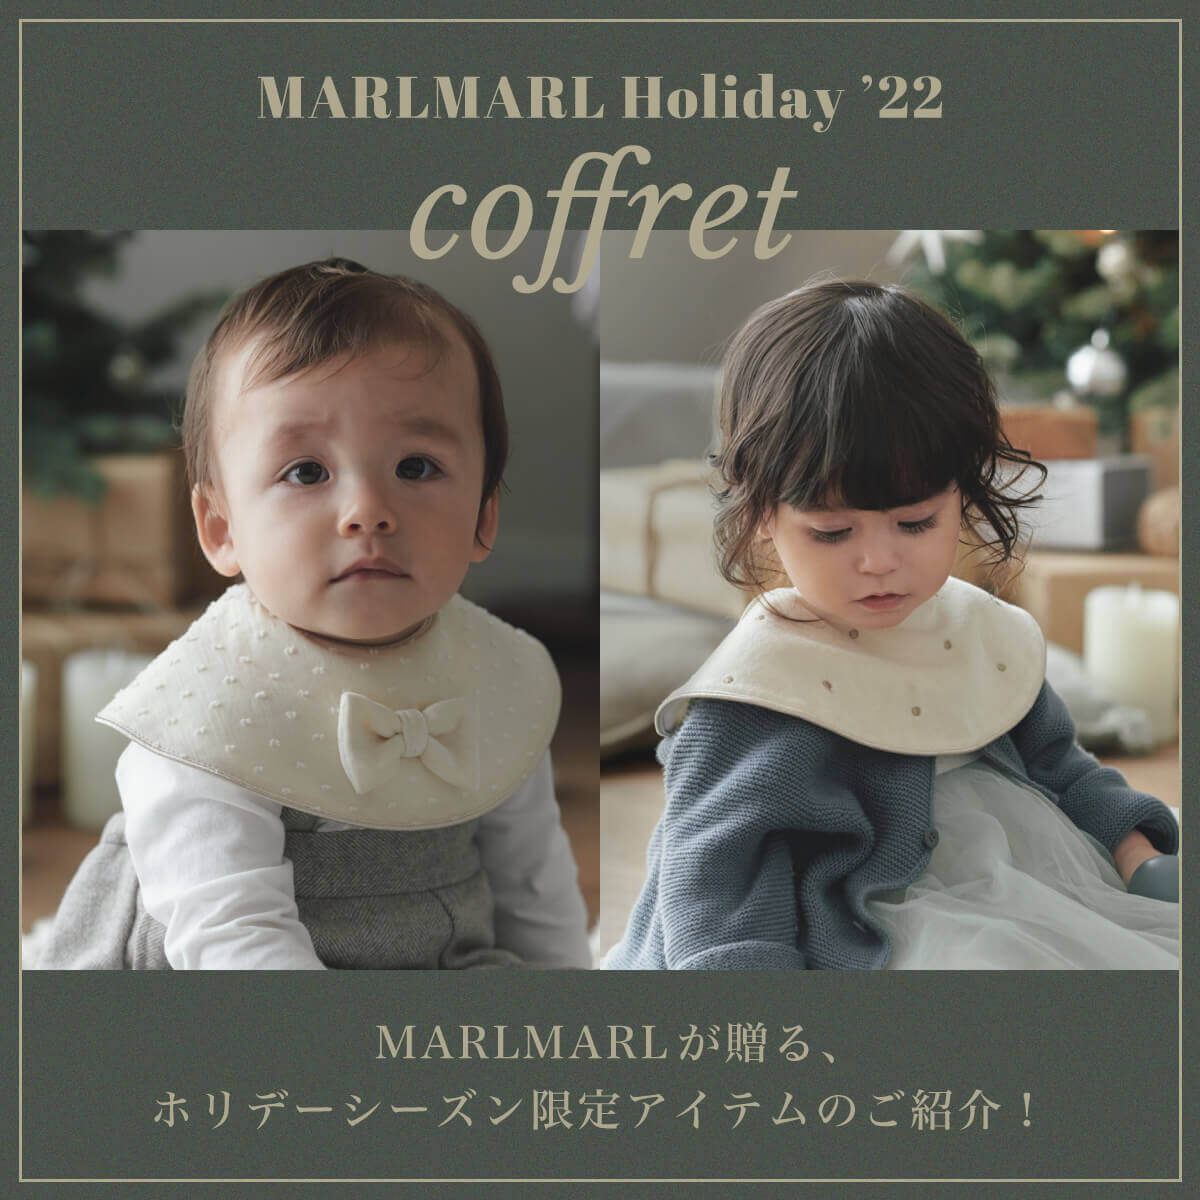 【MARLMARL Holiday 2022】この冬だけの特別なcoffretをお届け 11.10(THU.)